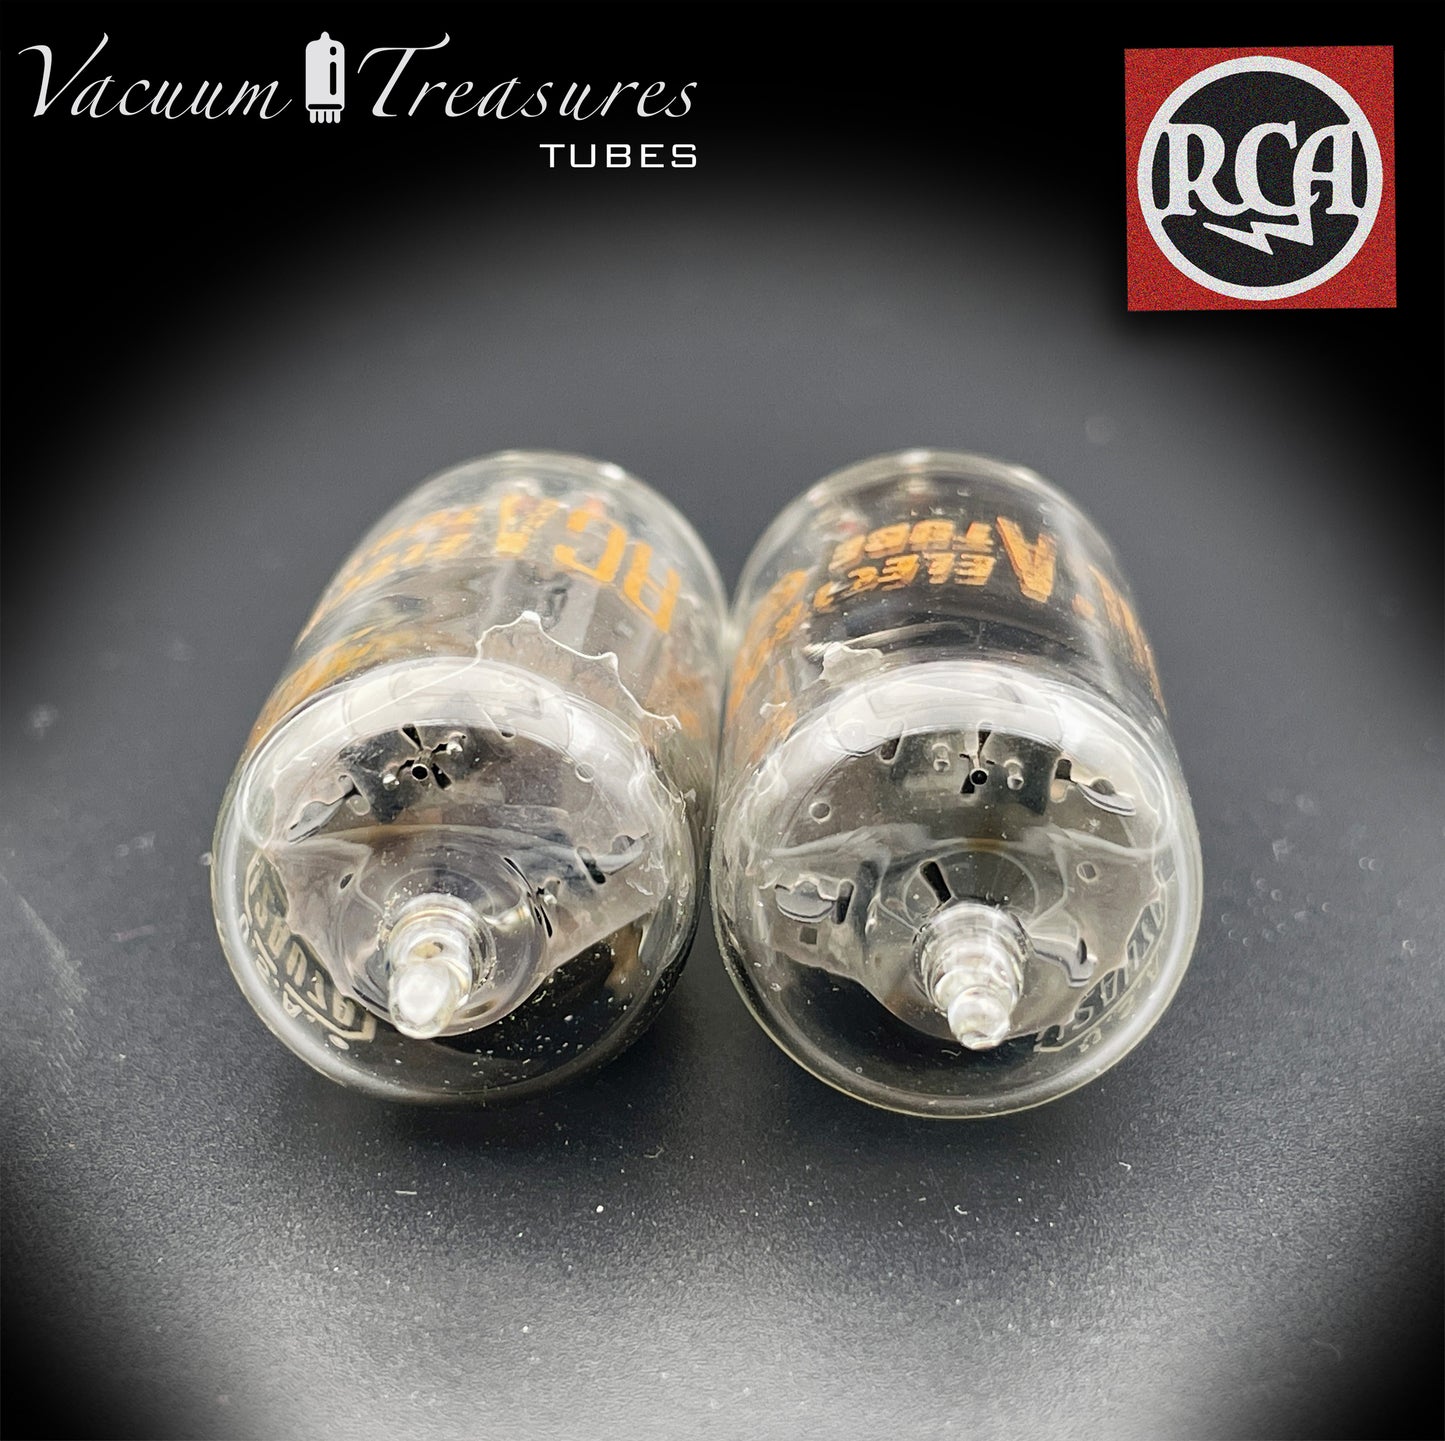 12AU7 A (ECC82) RCA Clear TOP longues plaques grises latérales [] Getter tubes assortis fabriqués aux États-Unis